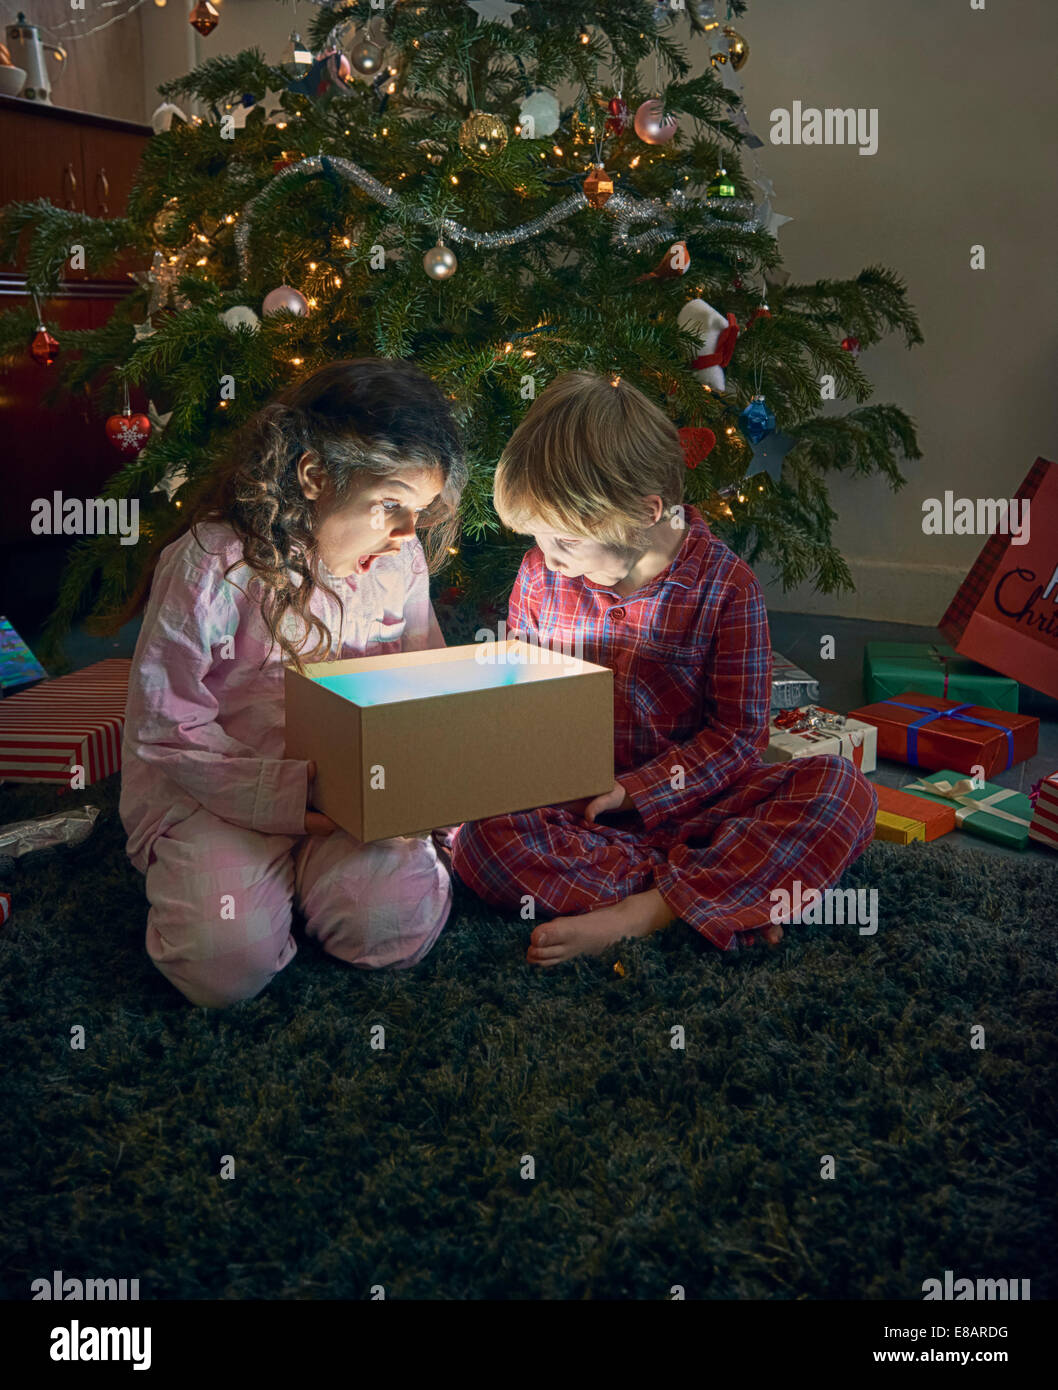 El hermano y la hermana atónito en desenvolver brillante caja de regalo de navidad Foto de stock